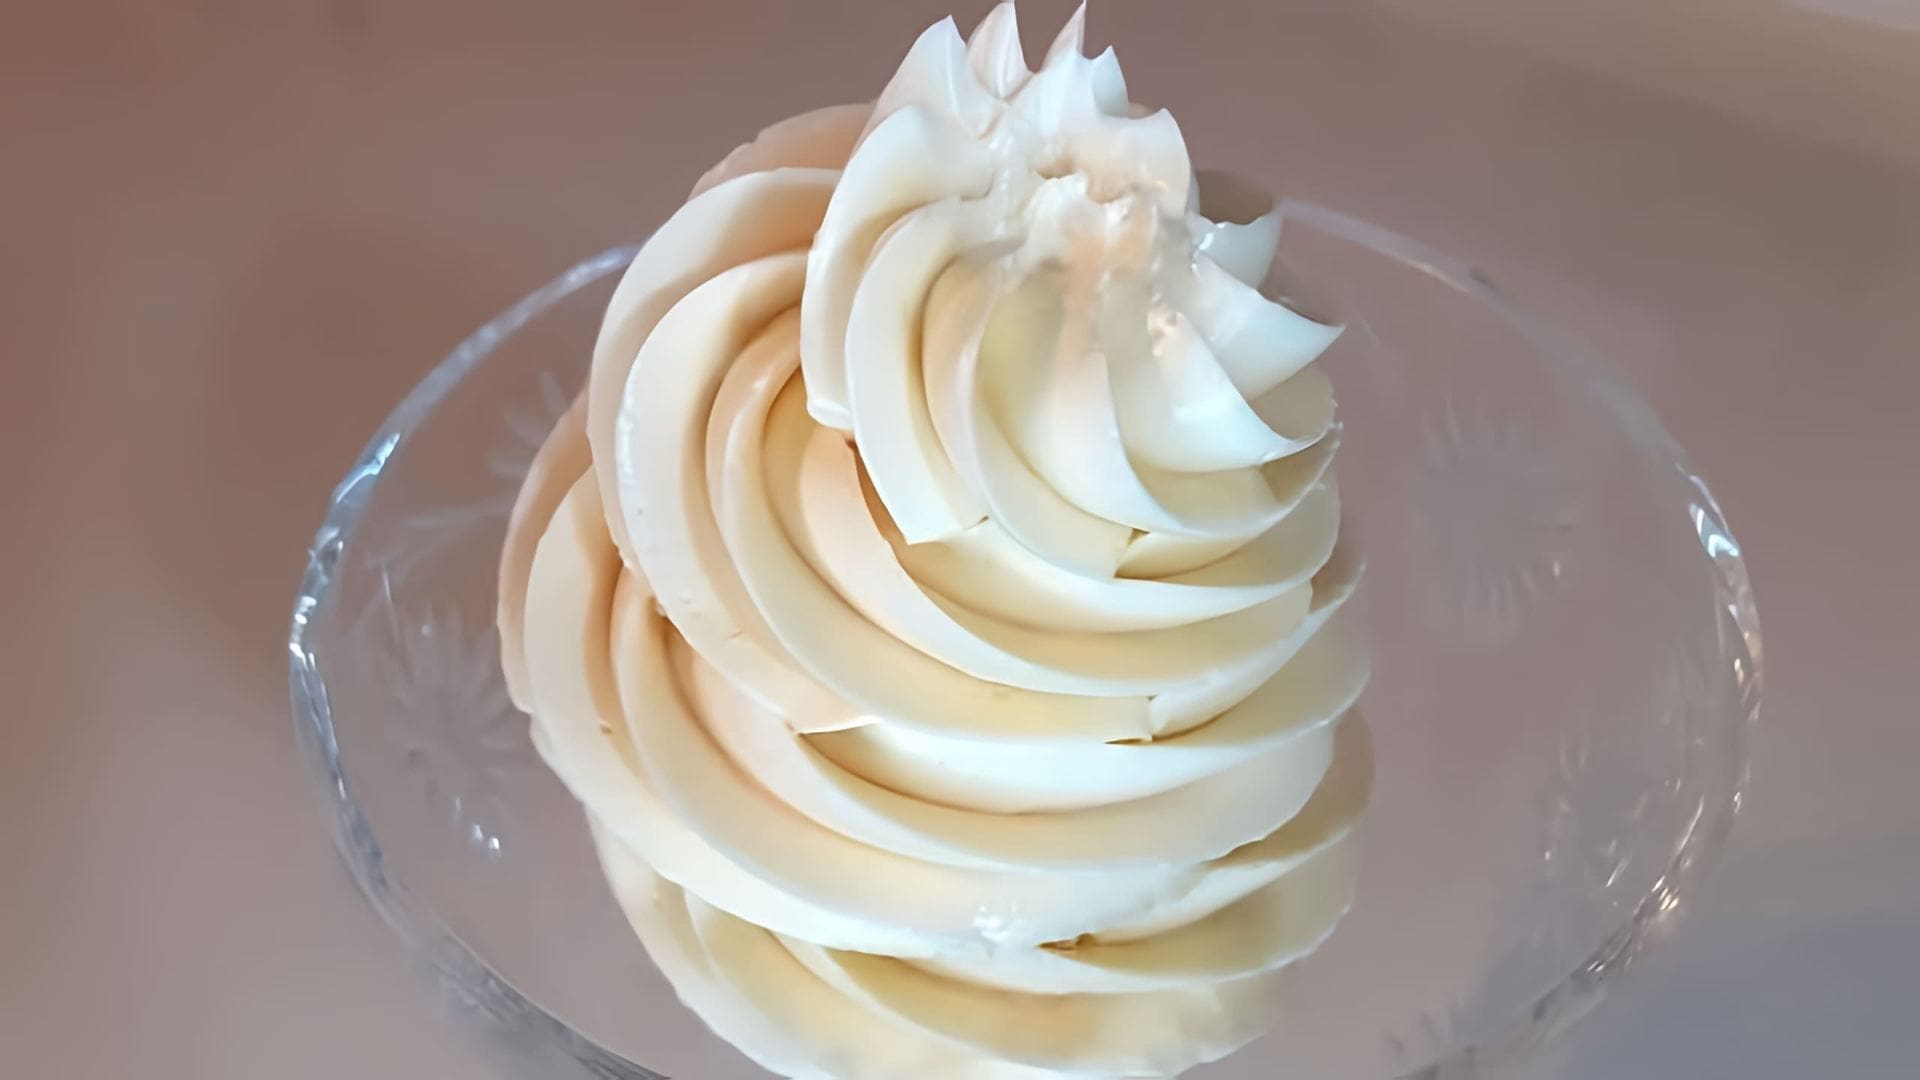 В этом видео демонстрируется рецепт простого и экономичного крема для украшения торта